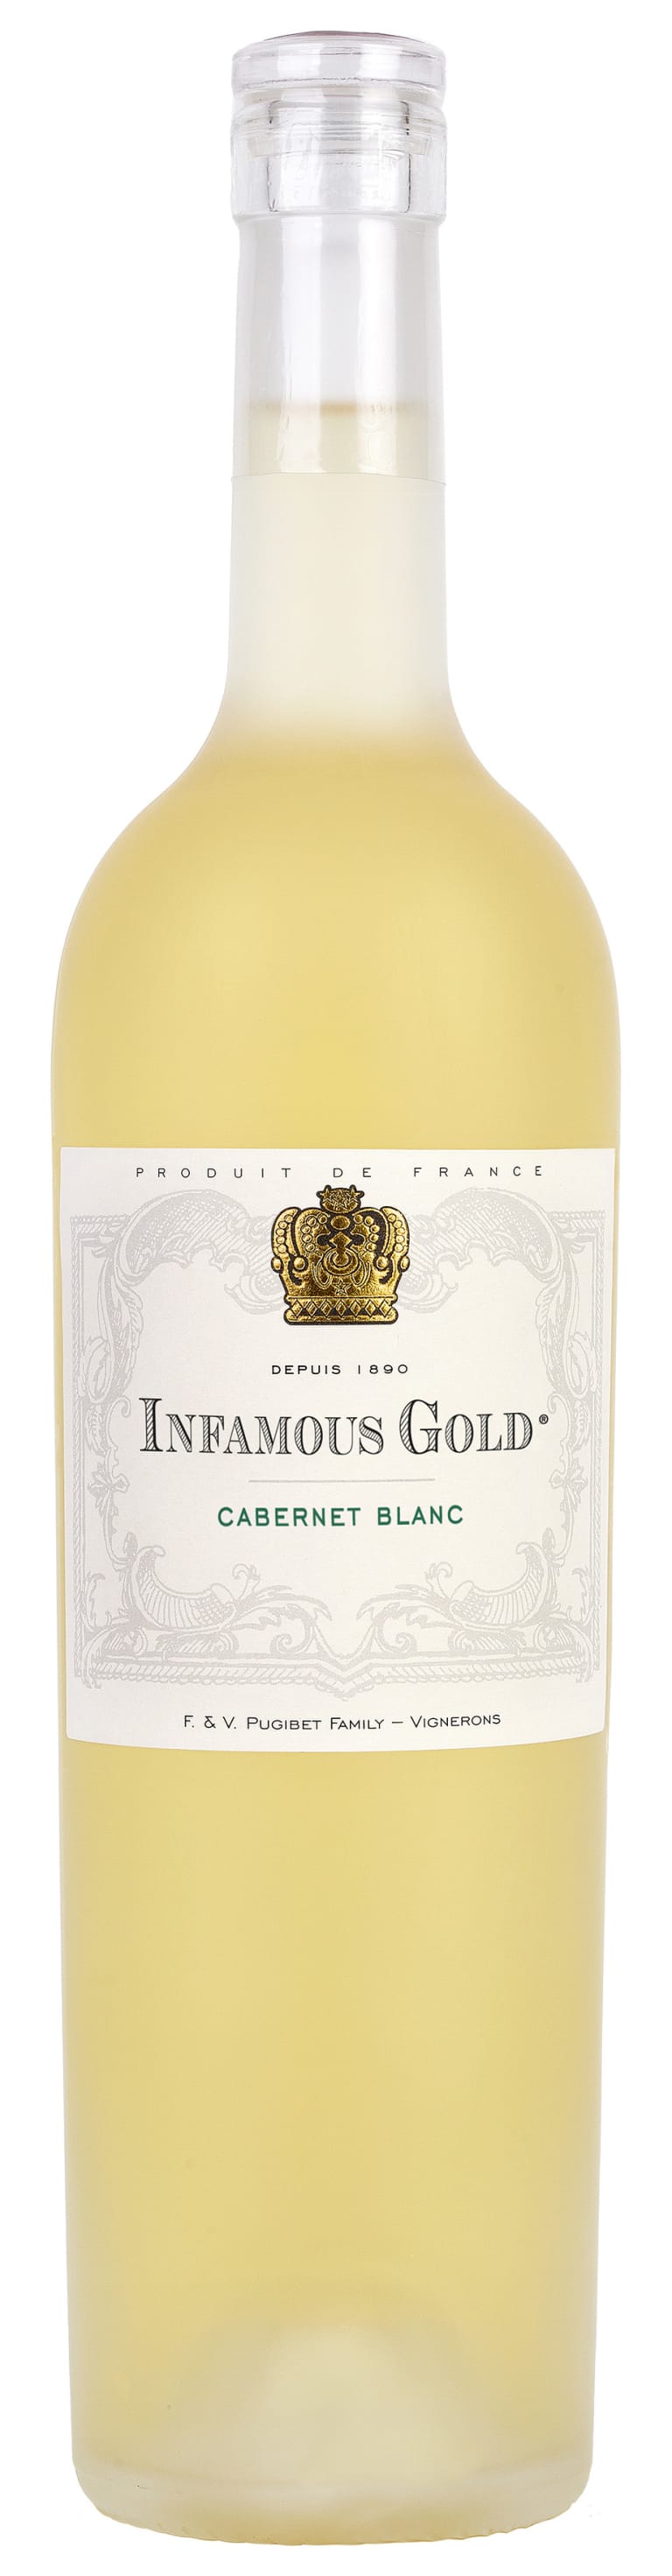 Infamous Gold Cabernet Blanc 2019